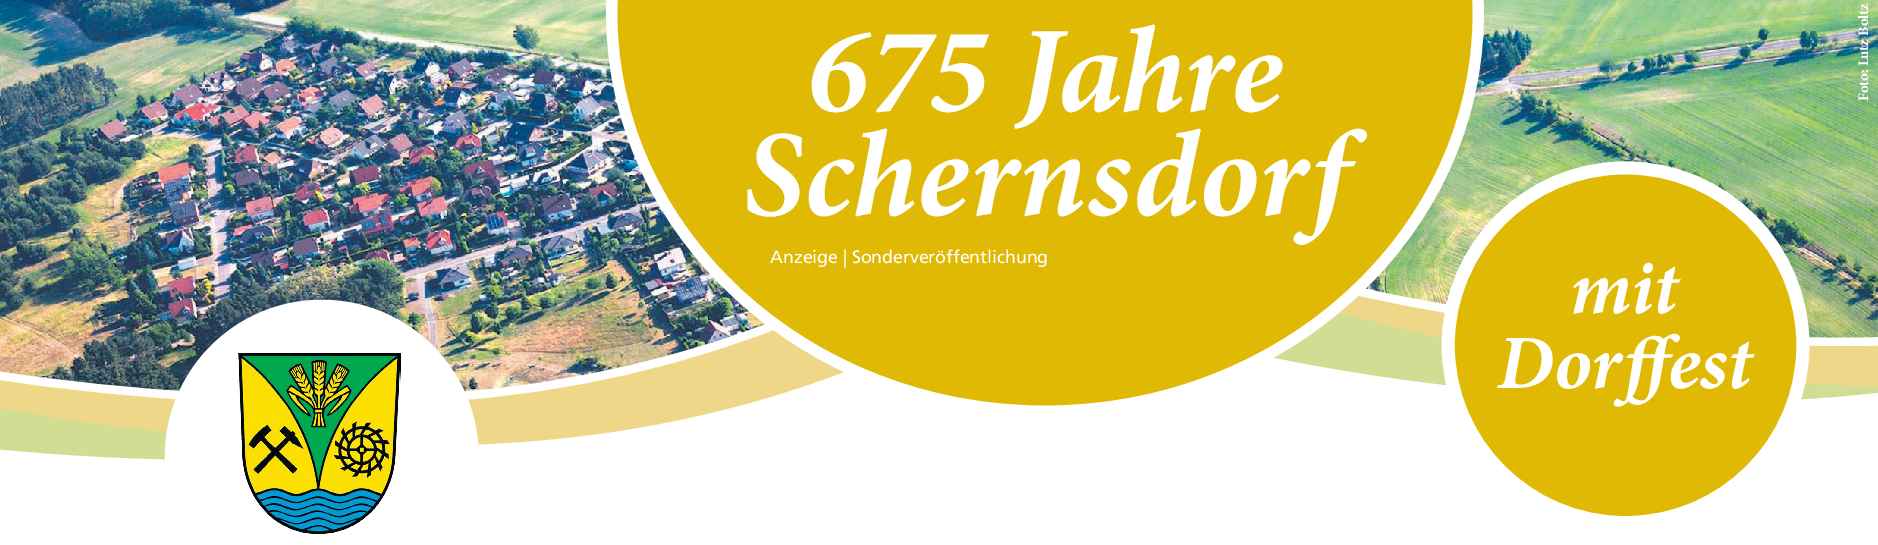 Dorffest Schernsdorf: Dorf mit langer Tradition